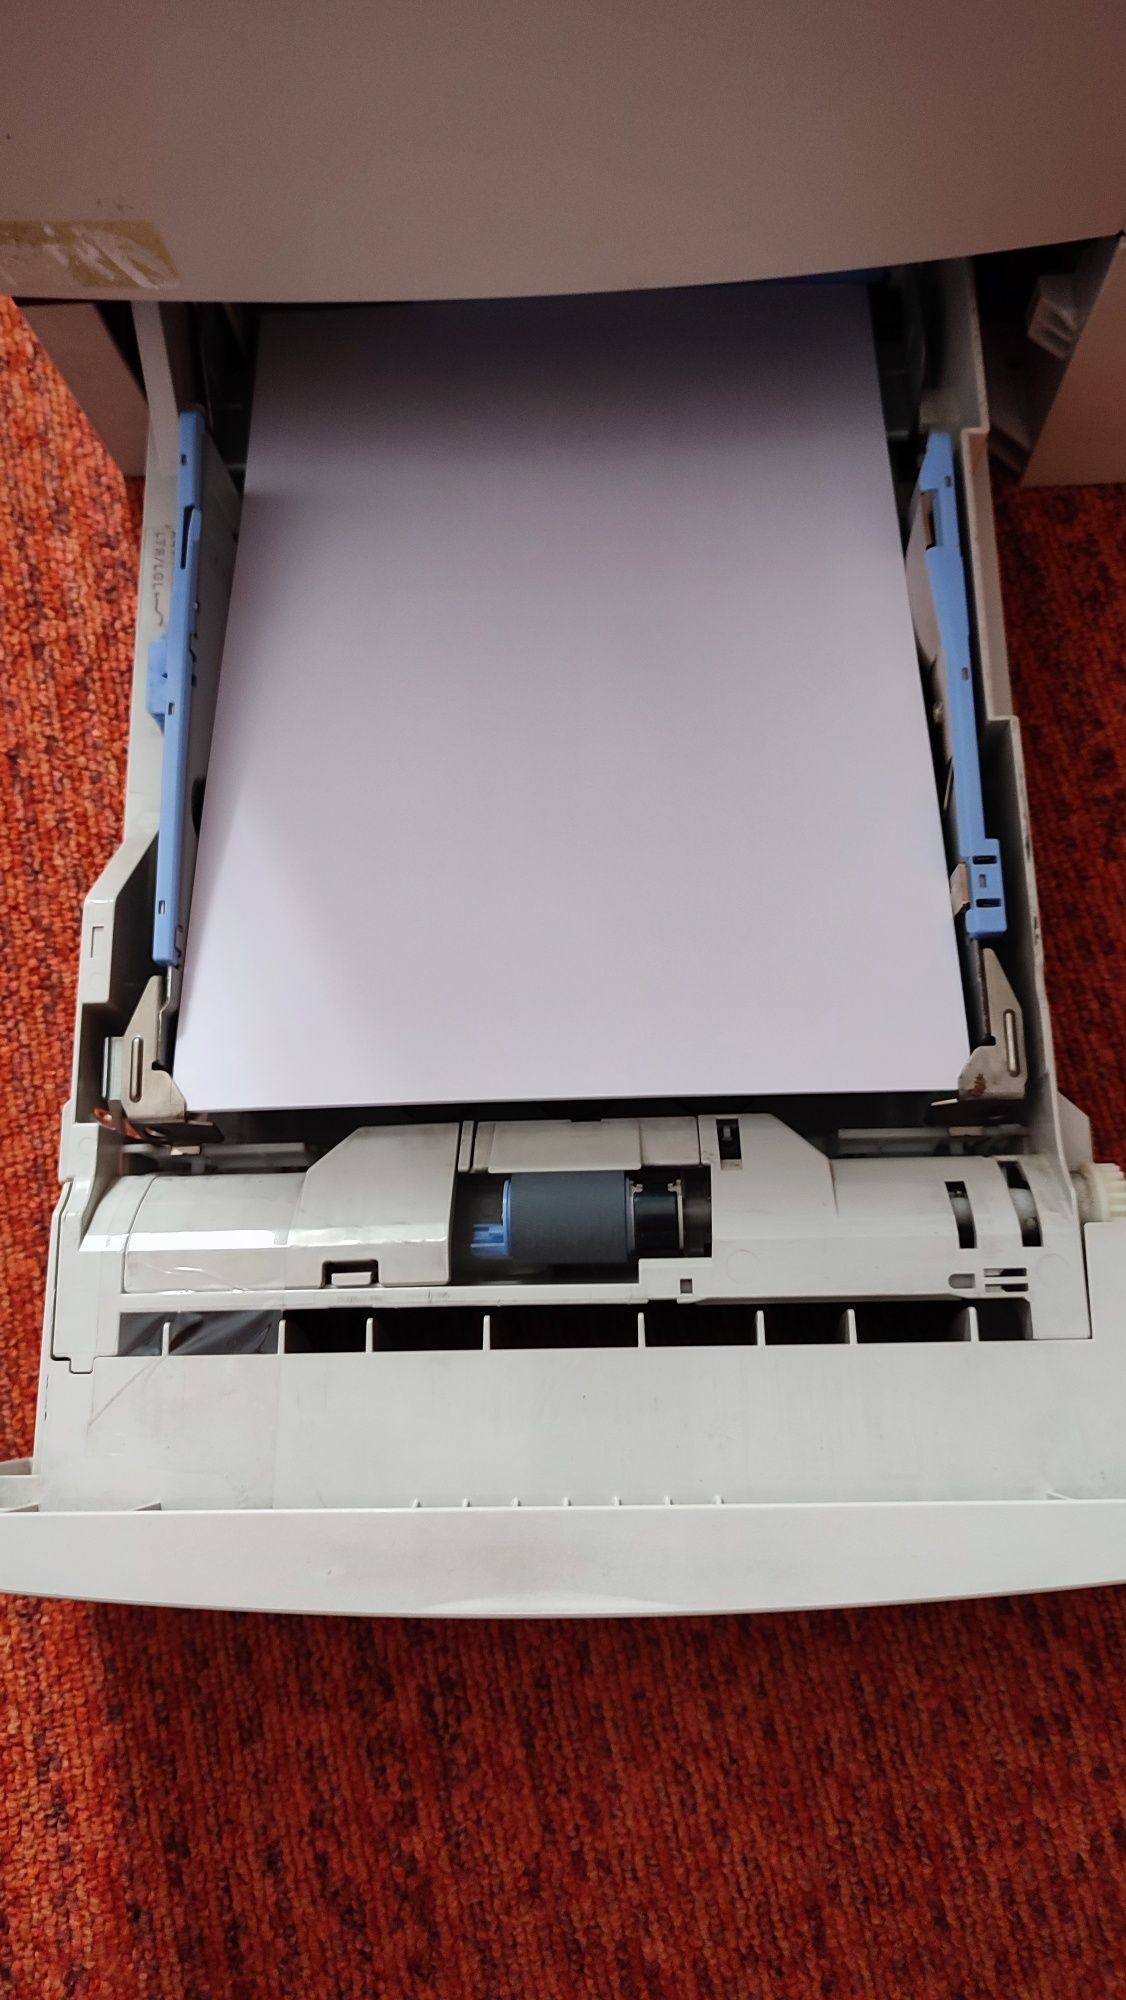 Принтер HP LaserJet 4000